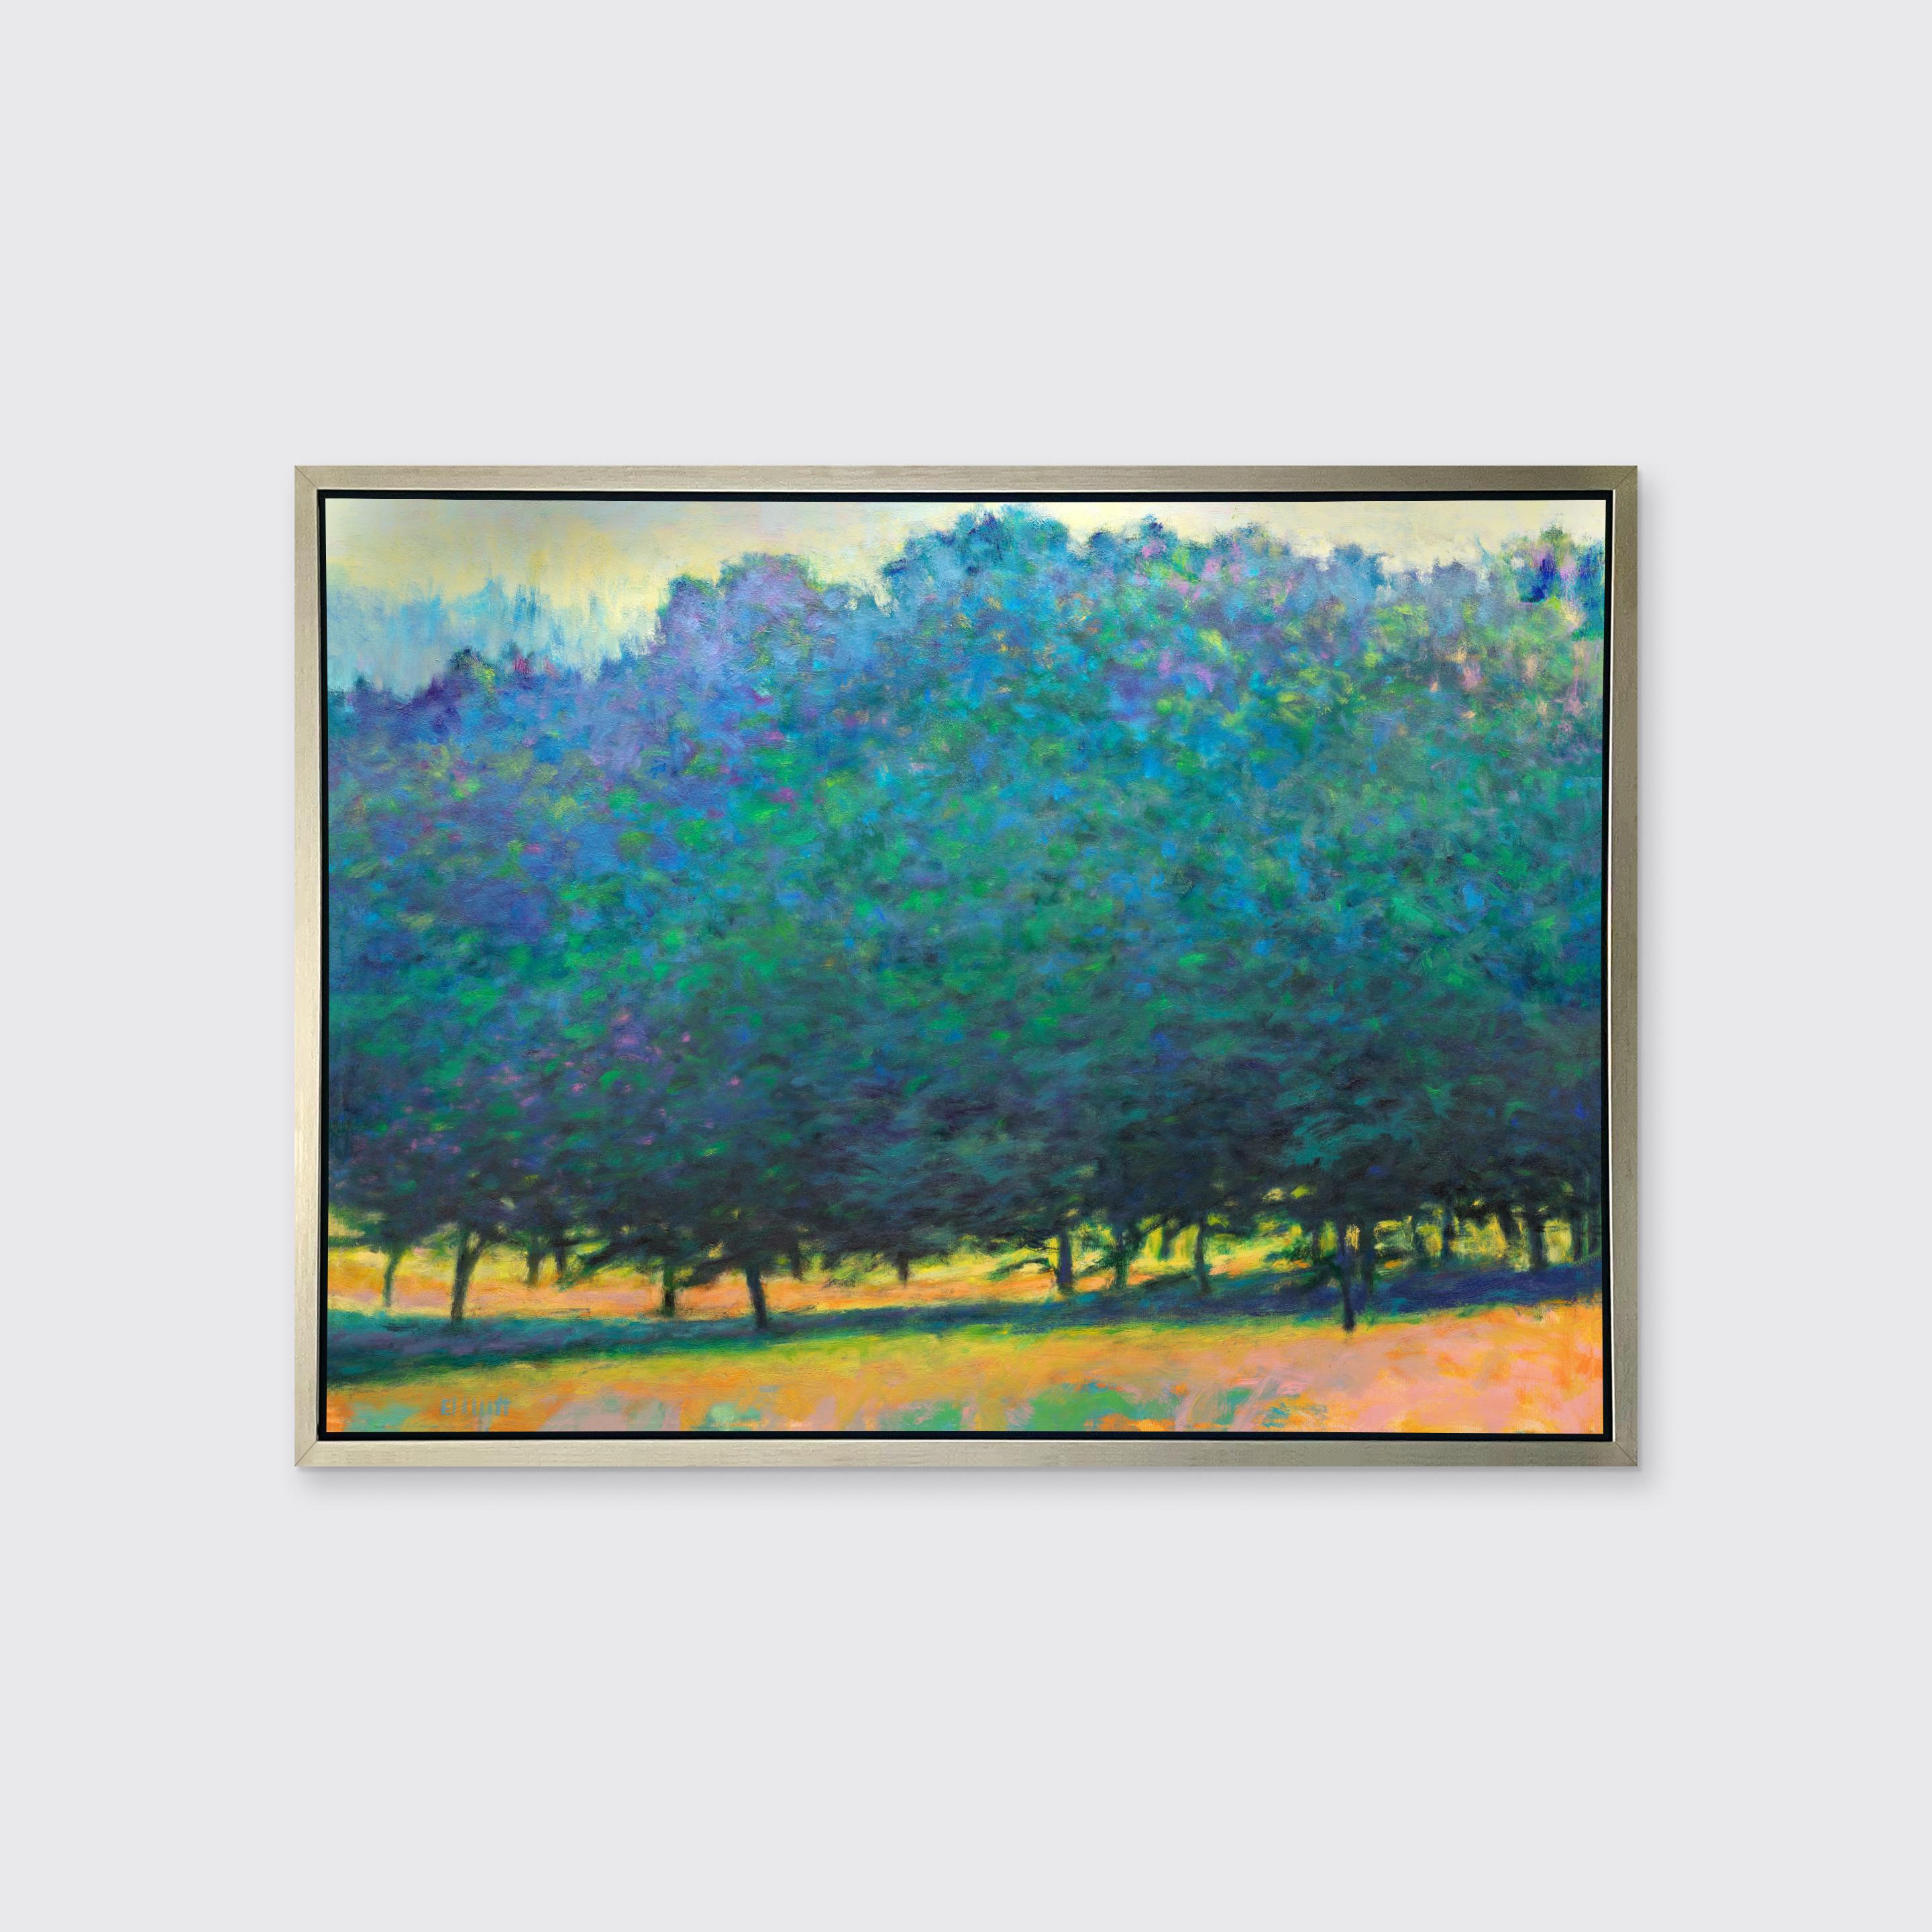 Dieses zeitgenössische abstrakte Landschaftsbild in limitierter Auflage von Ken Elliott zeigt hohe, üppige Bäume, deren Blätter in kühlen Blau- und Violetttönen gehalten sind. Kleine Teile der Unterseite der Stämme sind unter dem dichten Laub des